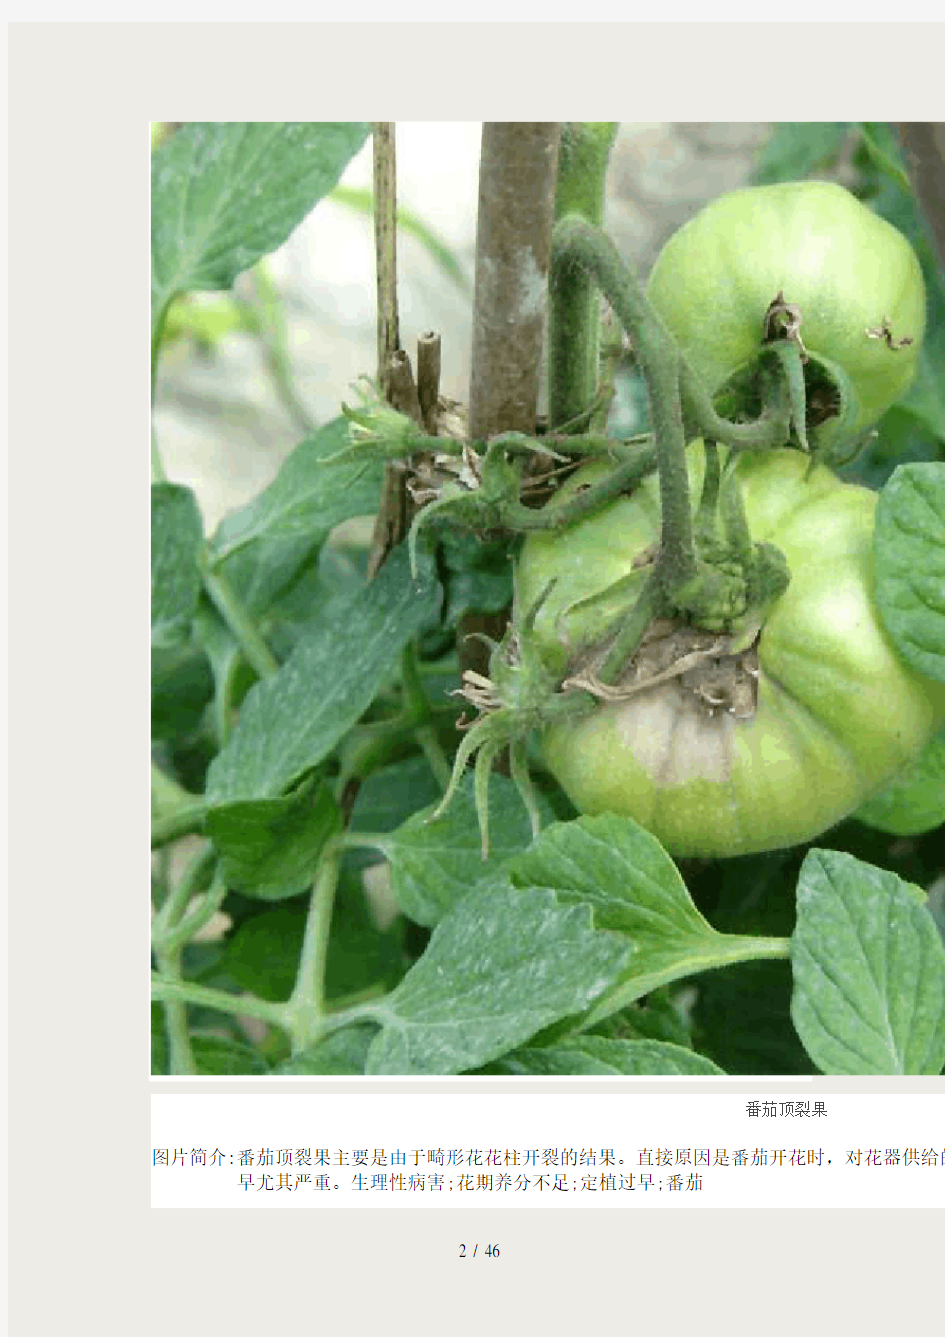 番茄病虫害图谱及防治方法介绍